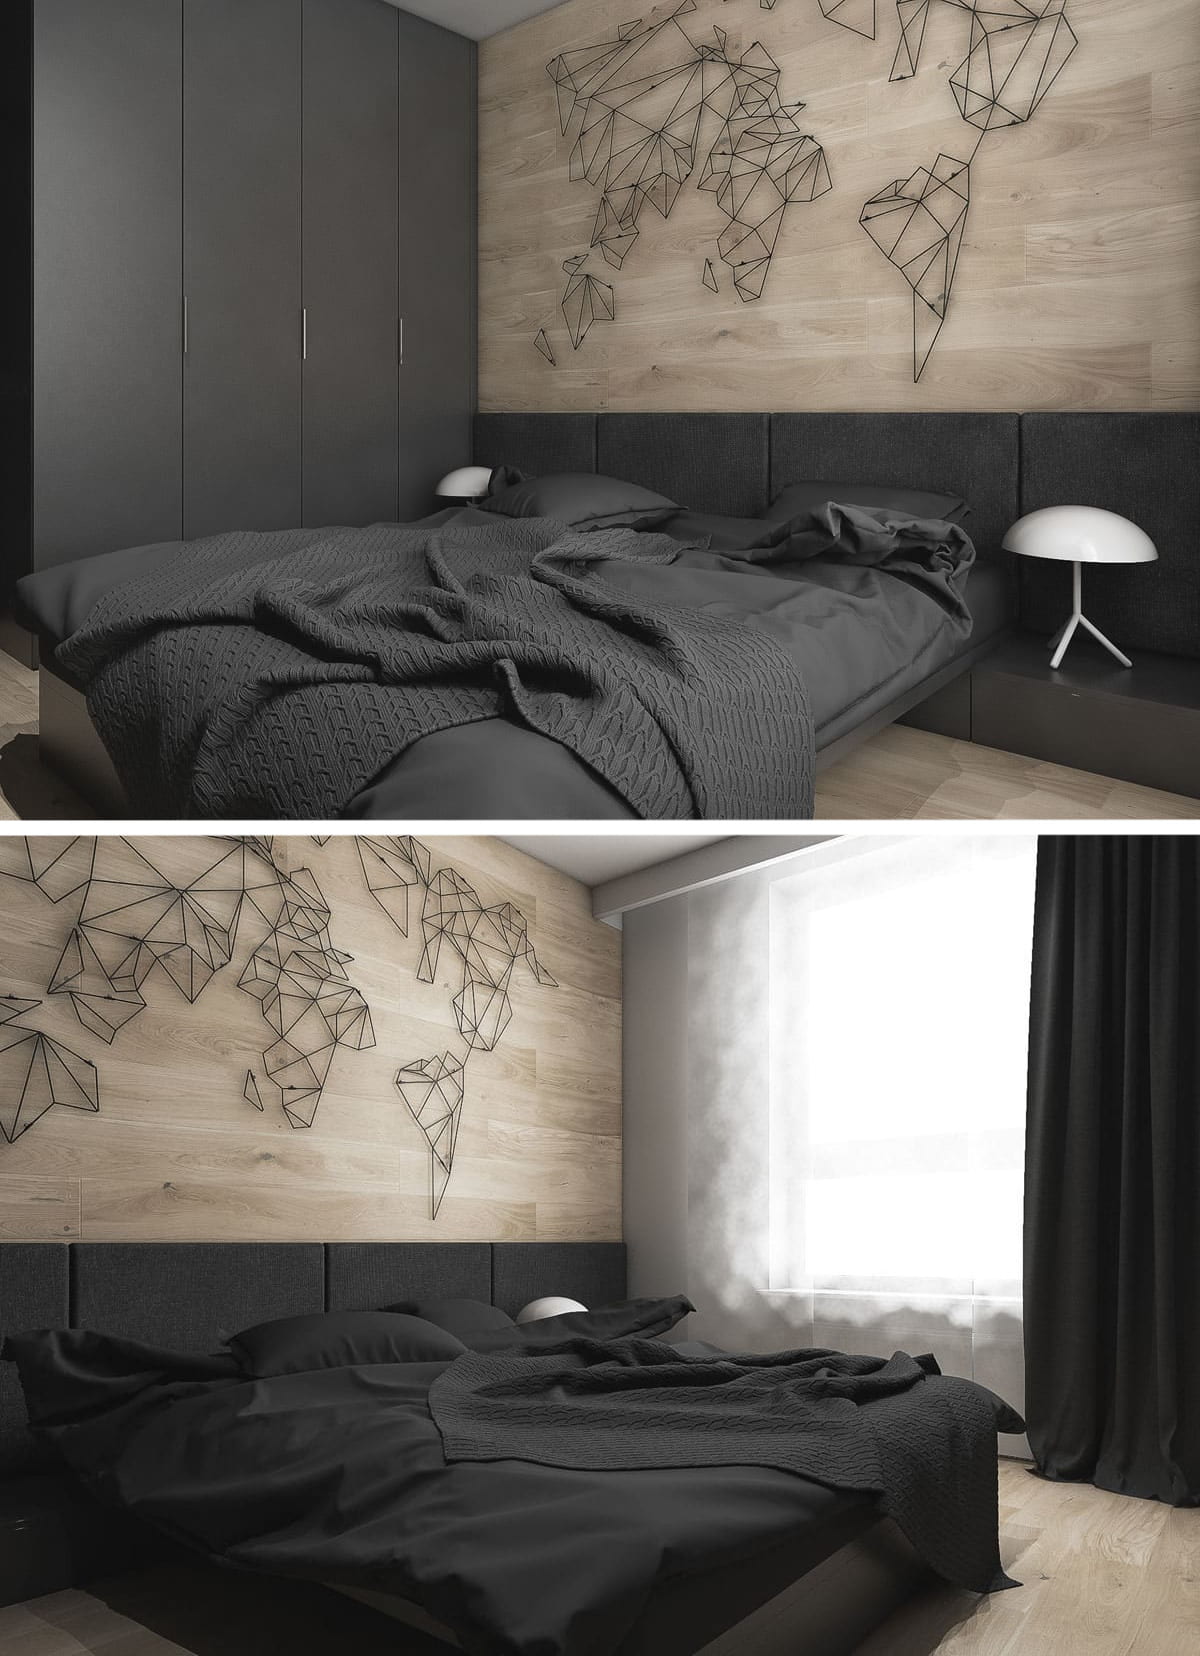 Классический вариант использования ламината на стене в спальне за изголовьем кровати - никогда не устареет и будет всегда пользоваться высокой популярностью